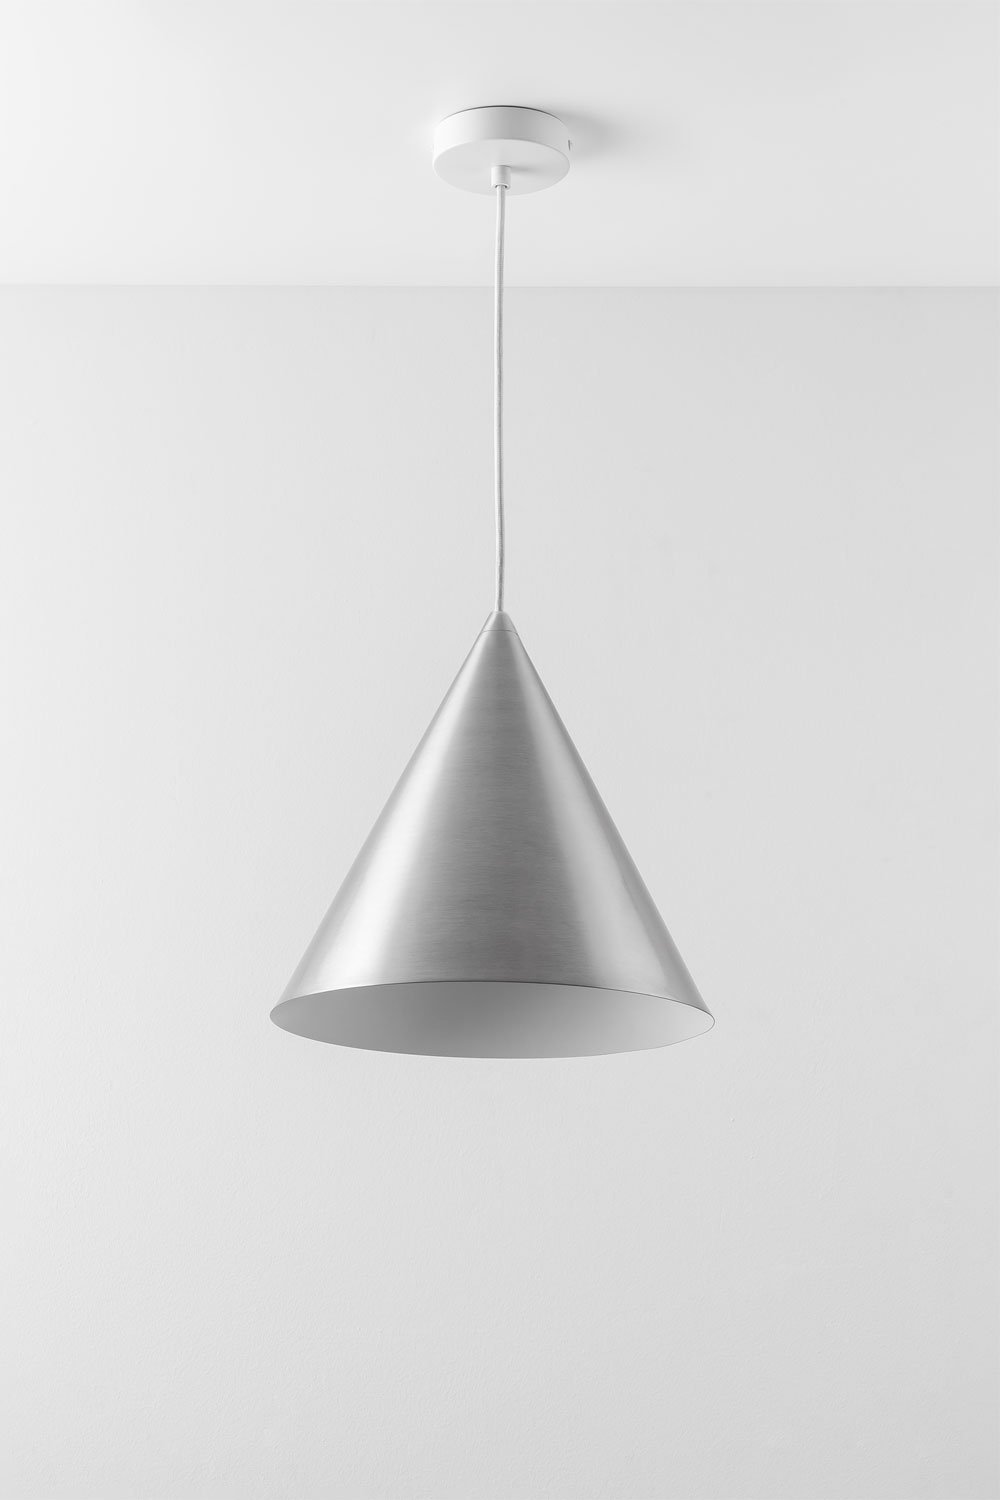 Arilda metalen plafondlamp, galerij beeld 1